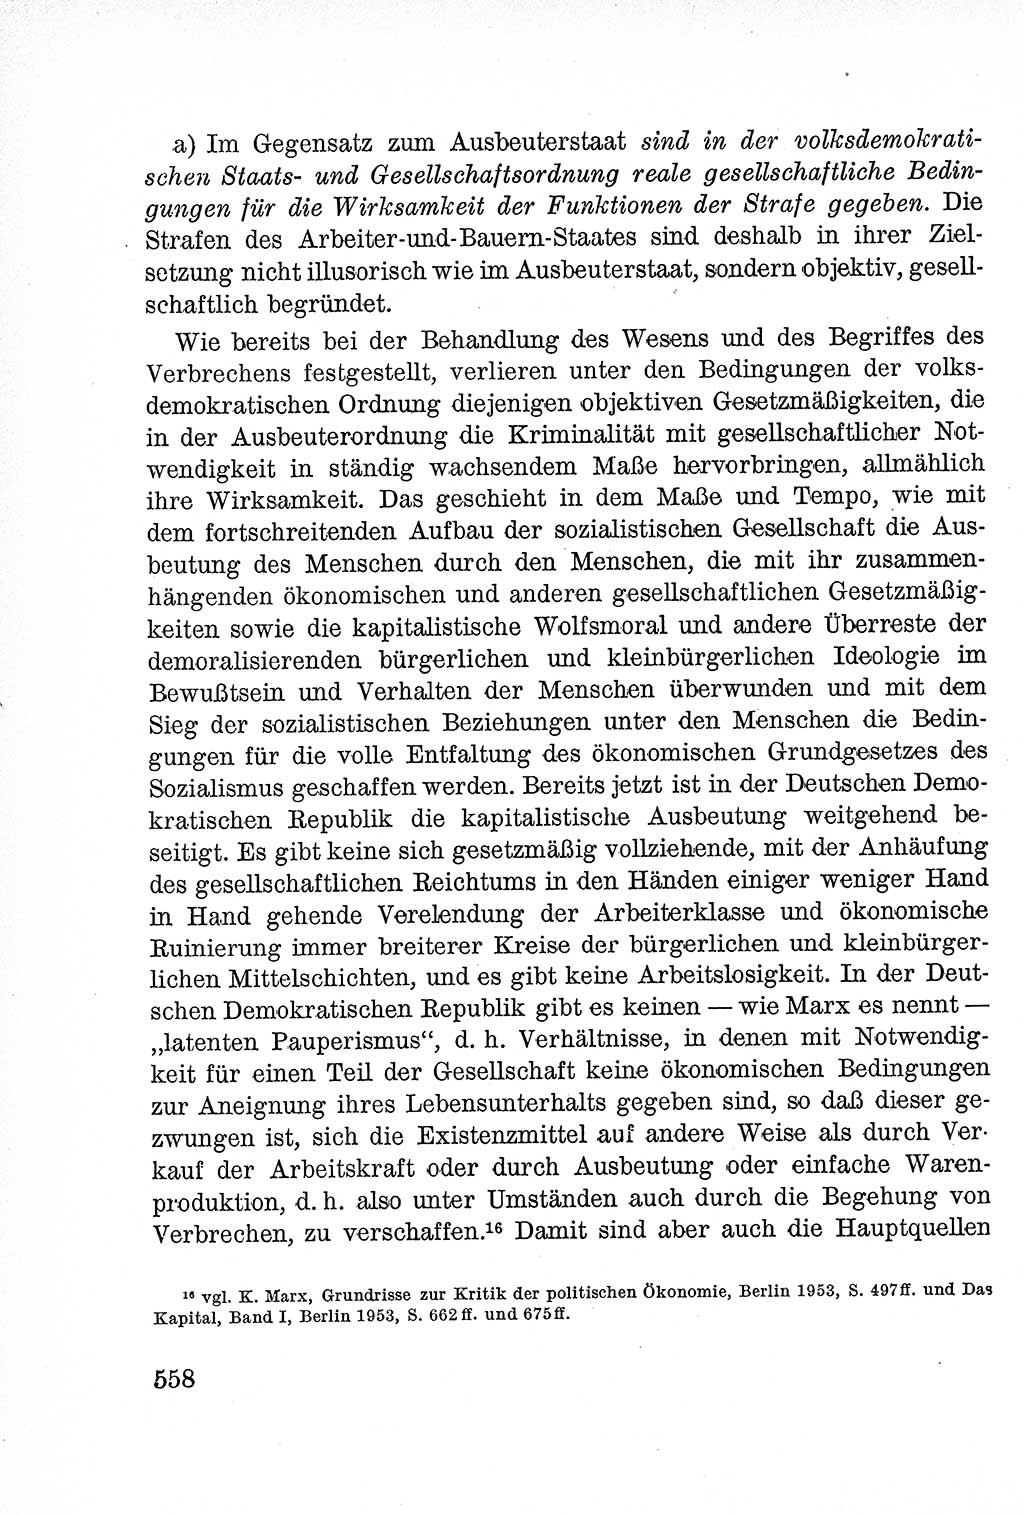 Lehrbuch des Strafrechts der Deutschen Demokratischen Republik (DDR), Allgemeiner Teil 1957, Seite 558 (Lb. Strafr. DDR AT 1957, S. 558)